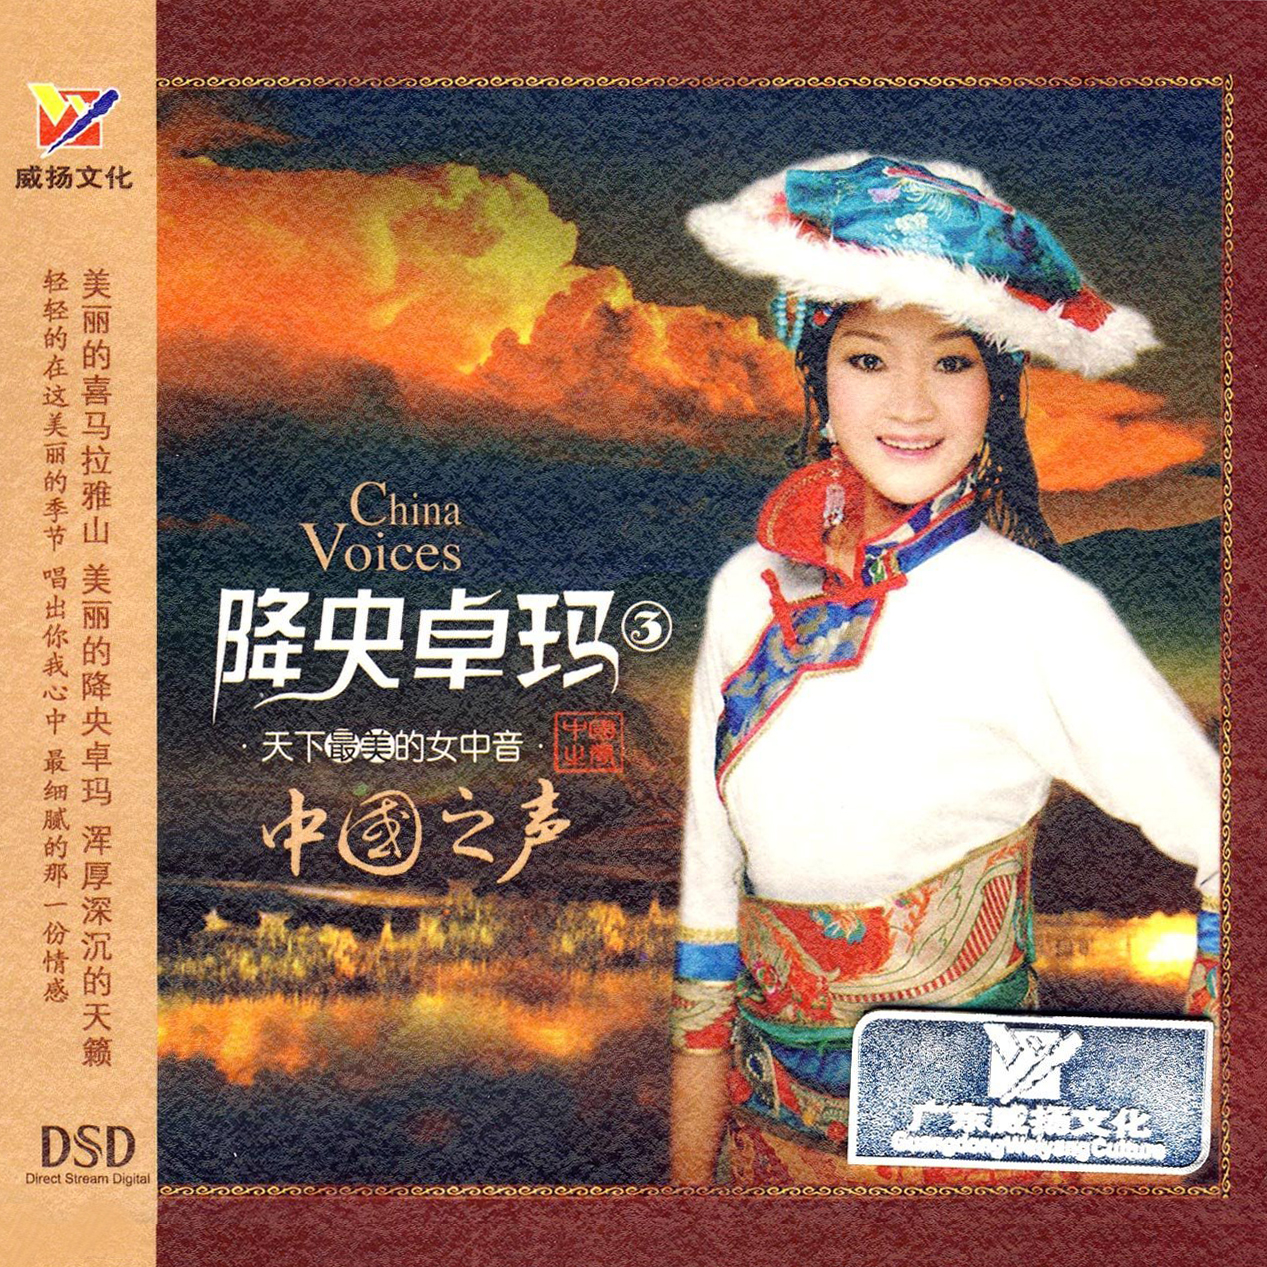 新歌：降央卓玛 - 泰山西湖 百度下载|音乐欣赏 - 武当休闲山庄 - 稳定,和谐,人性化的中文社区